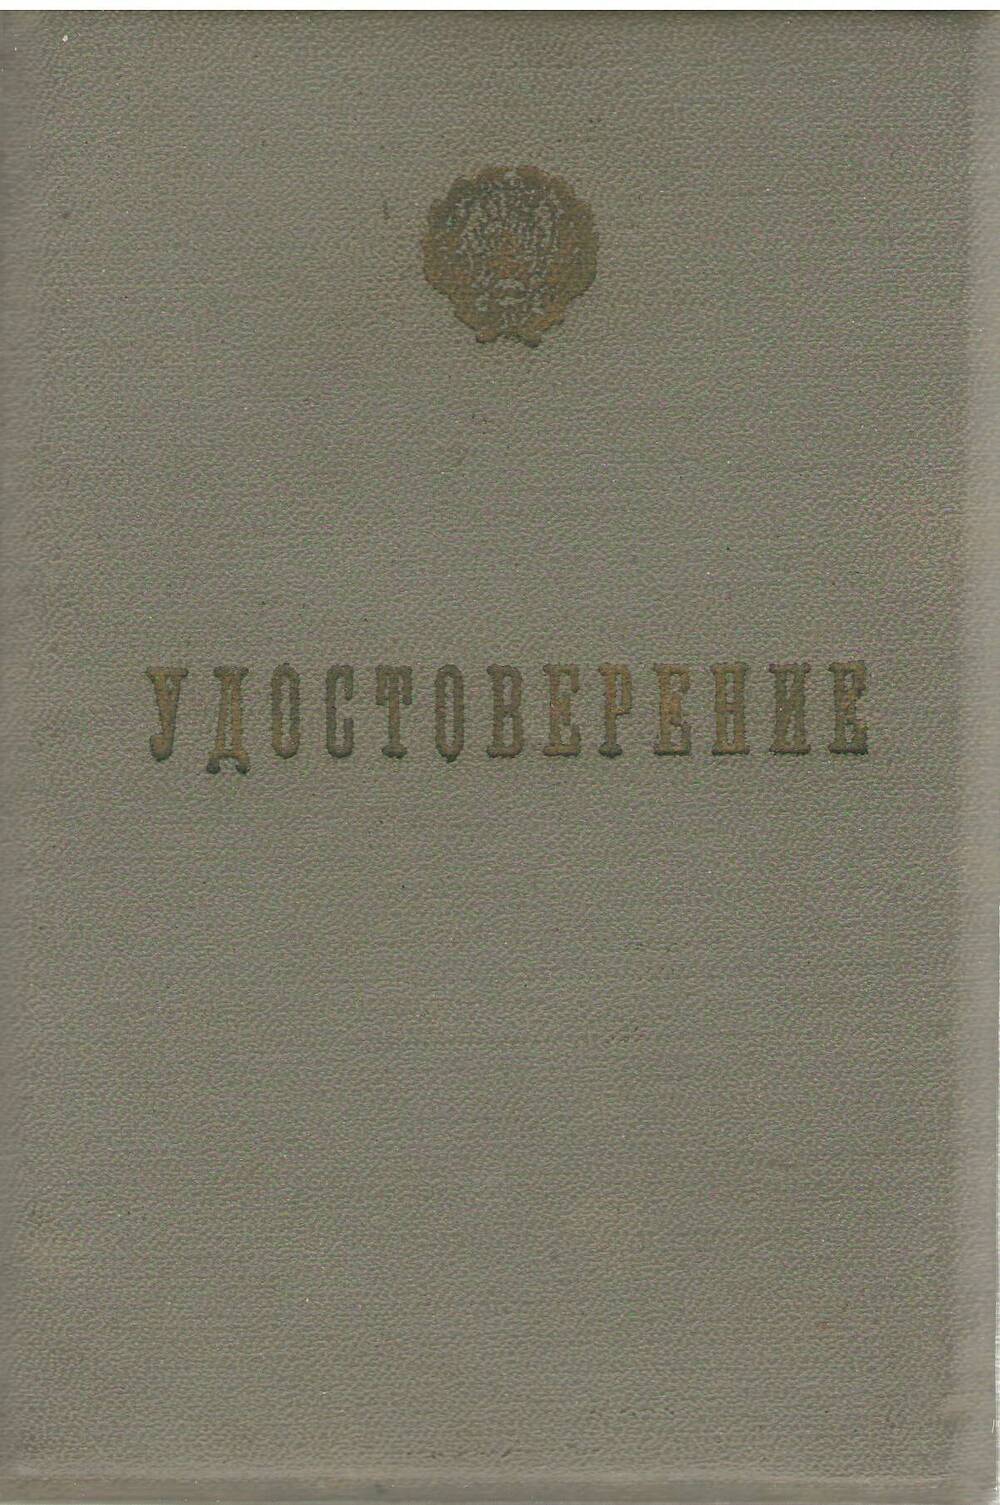 Удостоверение № 129 Потехина Юрия Михайловича об окончании 10-ти месячных курсов горных  мастеров при Елецкой техшколе.